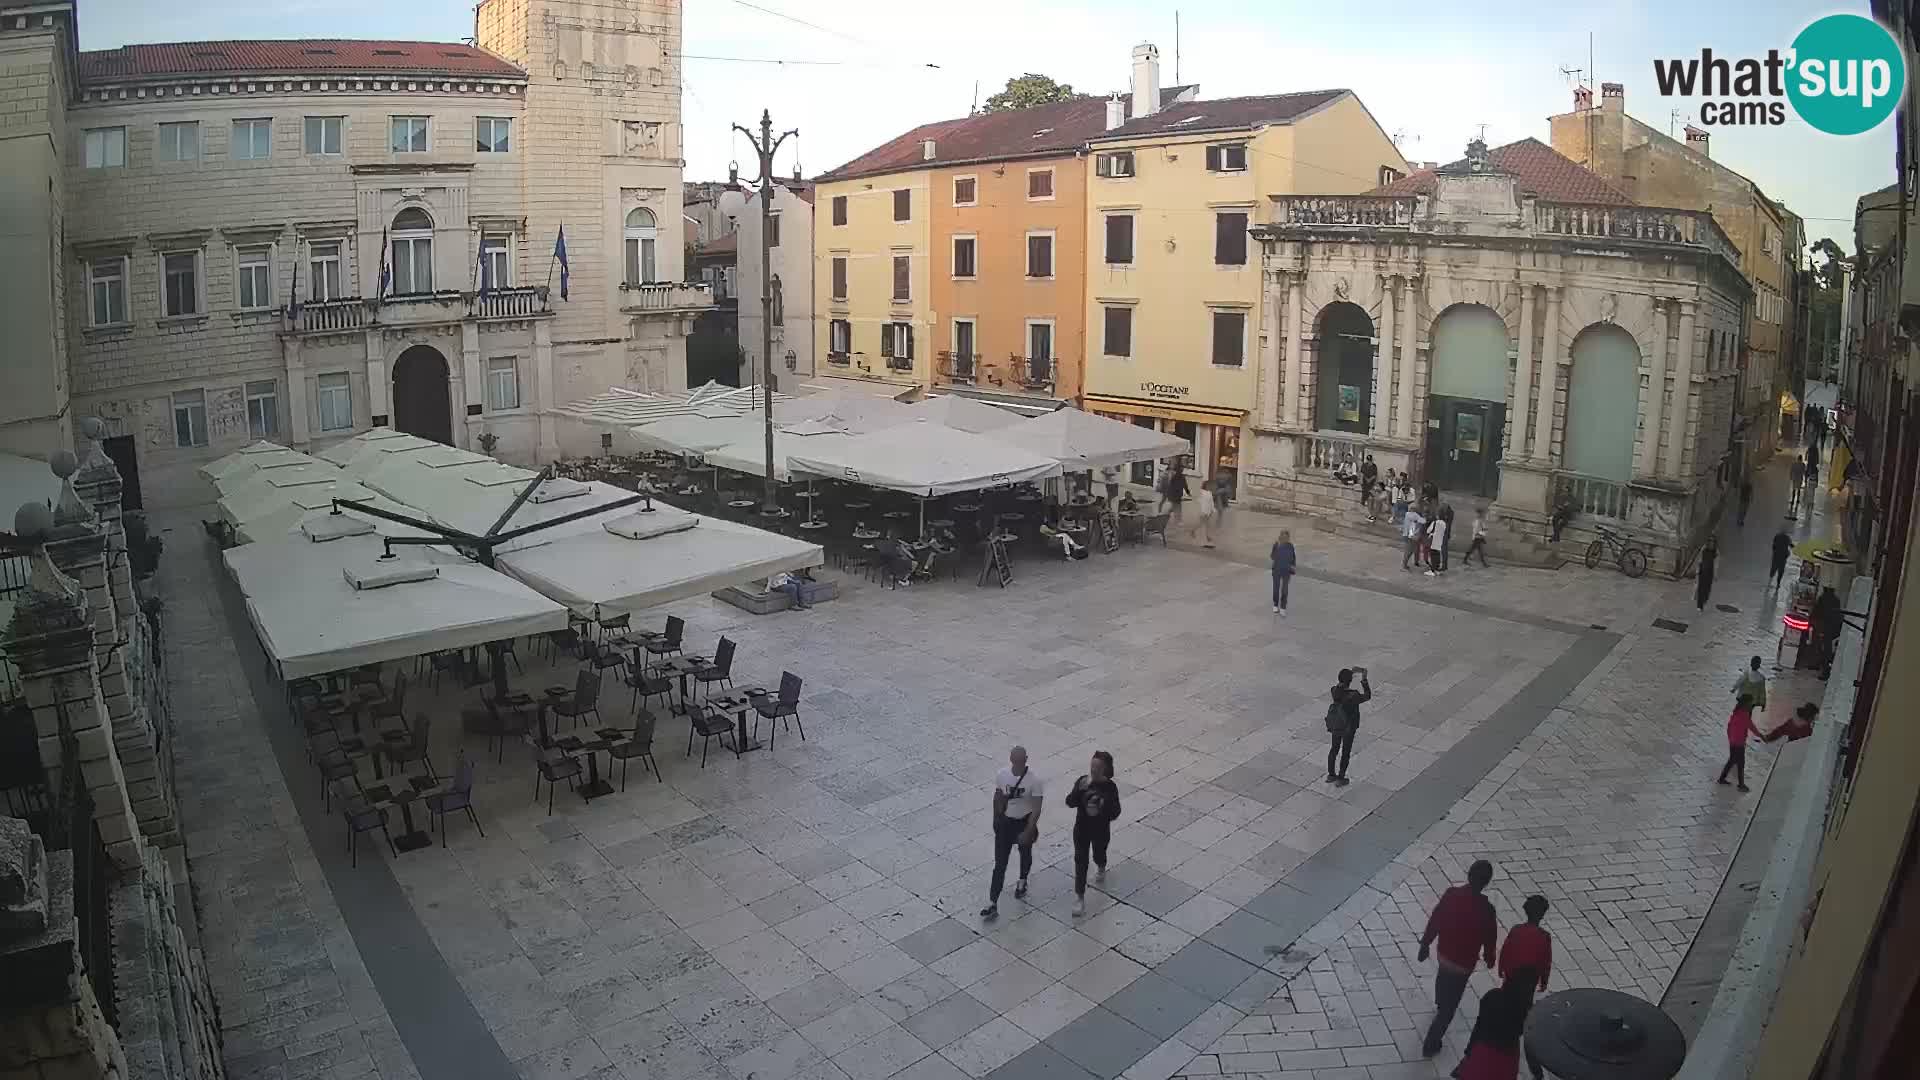 Zadar – Narodni trg “People’s square”